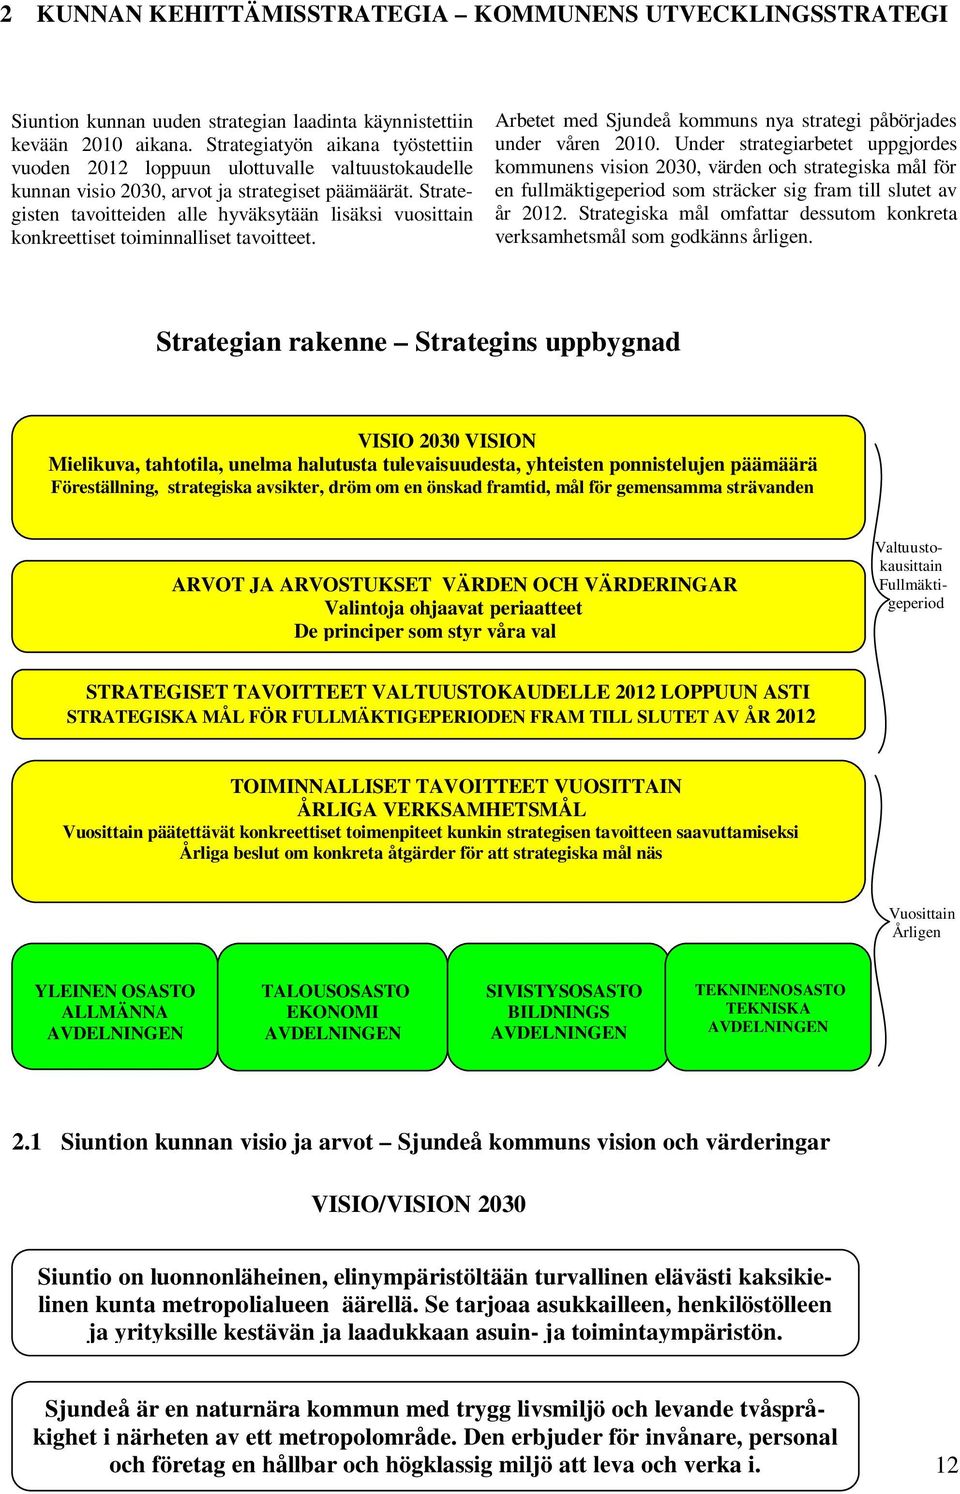 Strategisten tavoitteiden alle hyväksytään lisäksi vuosittain konkreettiset toiminnalliset tavoitteet. Arbetet med Sjundeå kommuns nya strategi påbörjades under våren 2010.